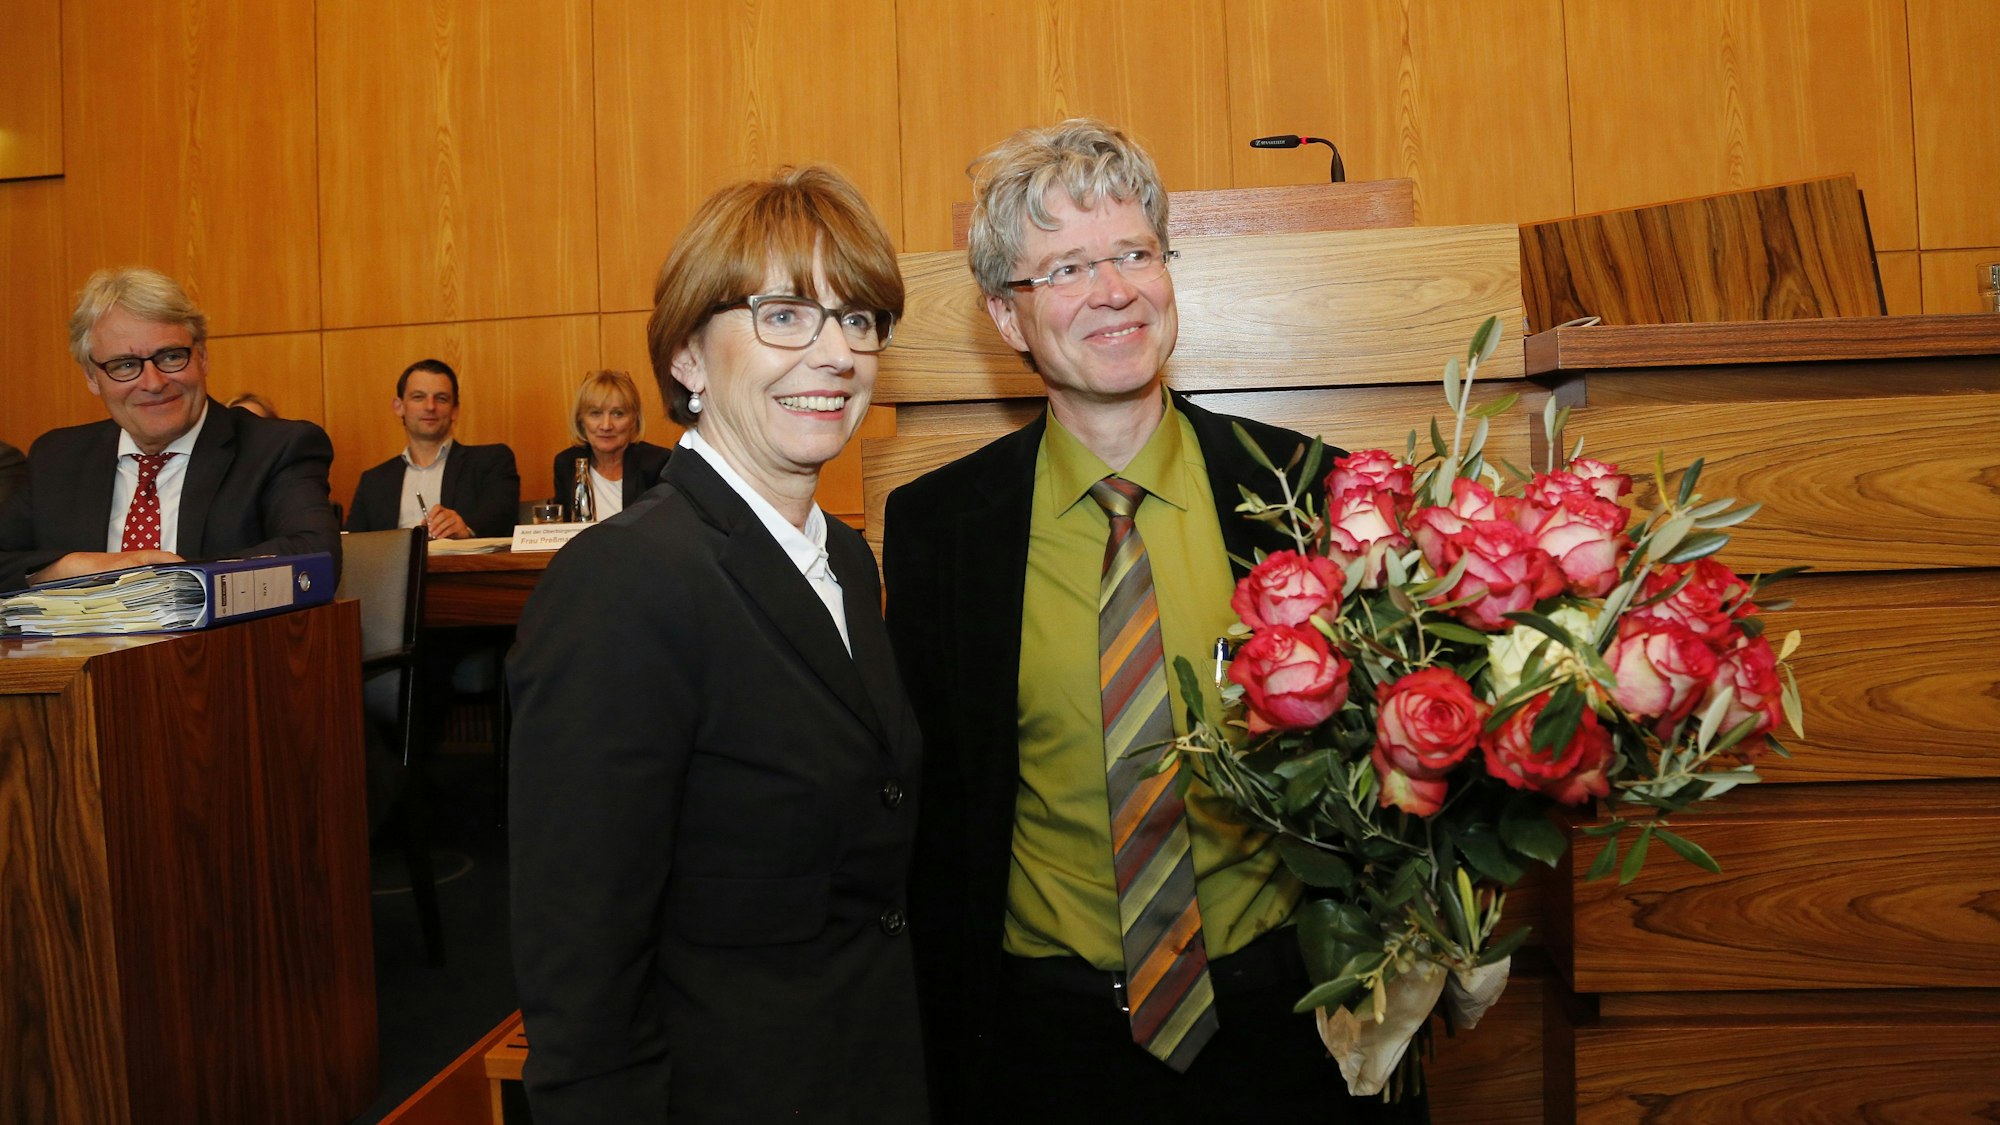 Das Bild zeigt eine Frau und einen Mann im Kölner Ratssaal, er hält einen Blumenstrauß in der Hand.